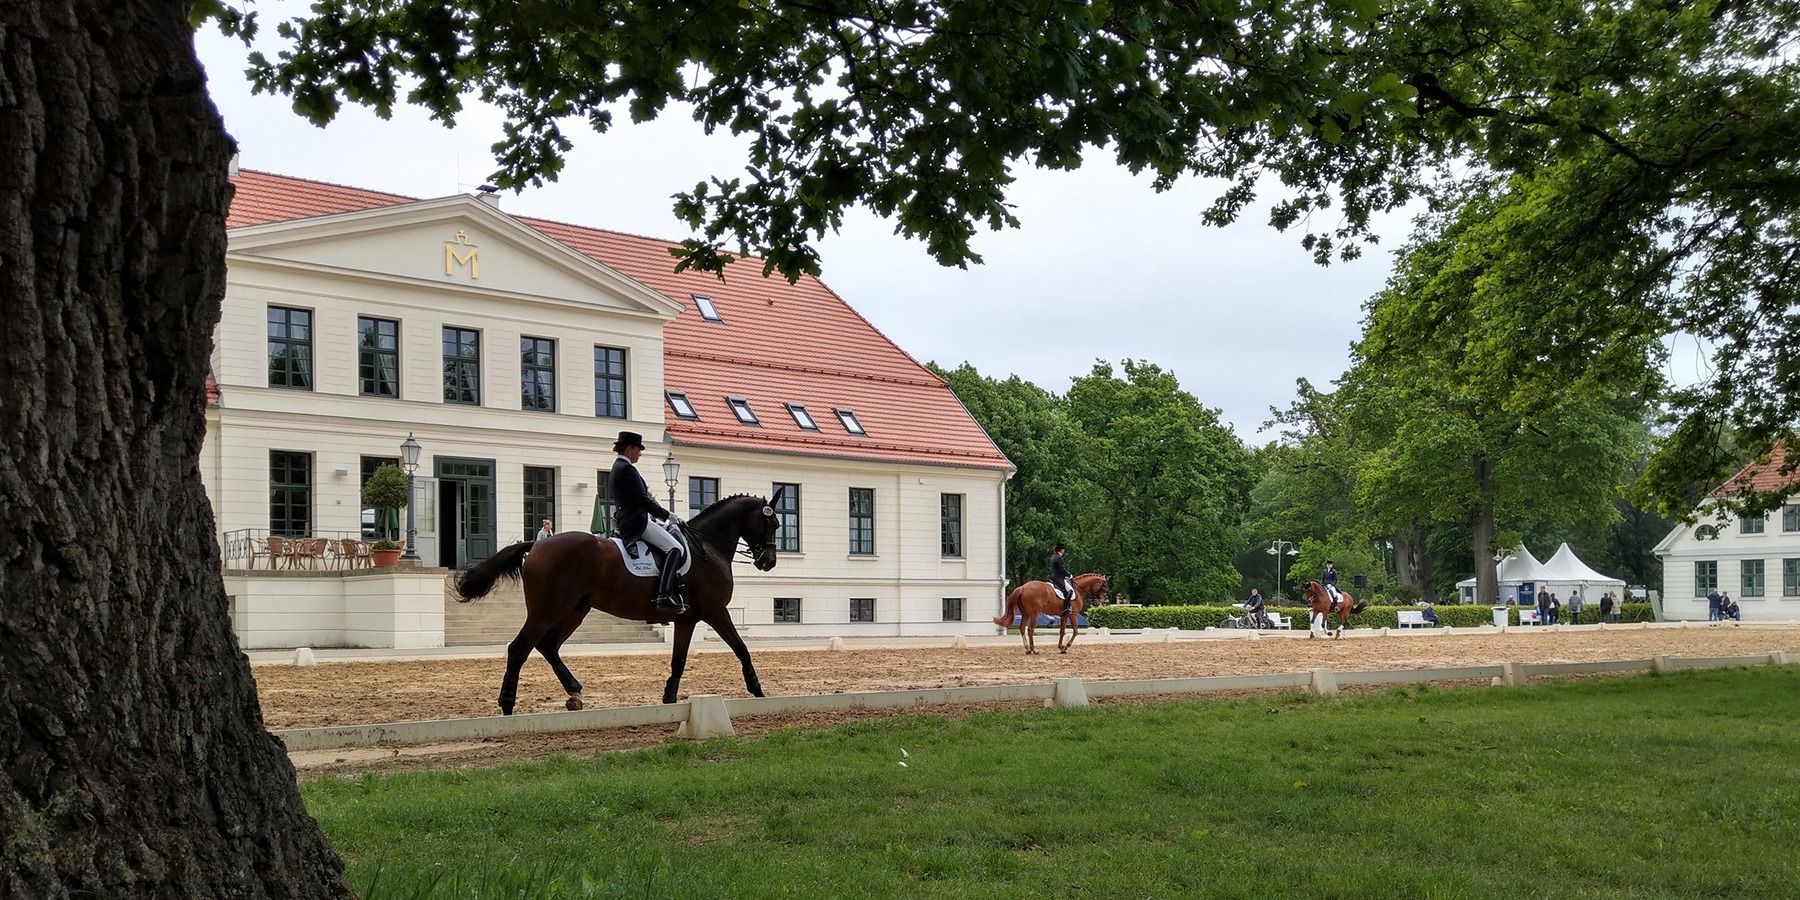 Auf dem Rücken der Pferde liegt das Glück dieser Erde - hier zum Beispiel im Landgestüt Redefin. © 2020 Staatliches Bau- und Liegenschaftsamt Schwerin